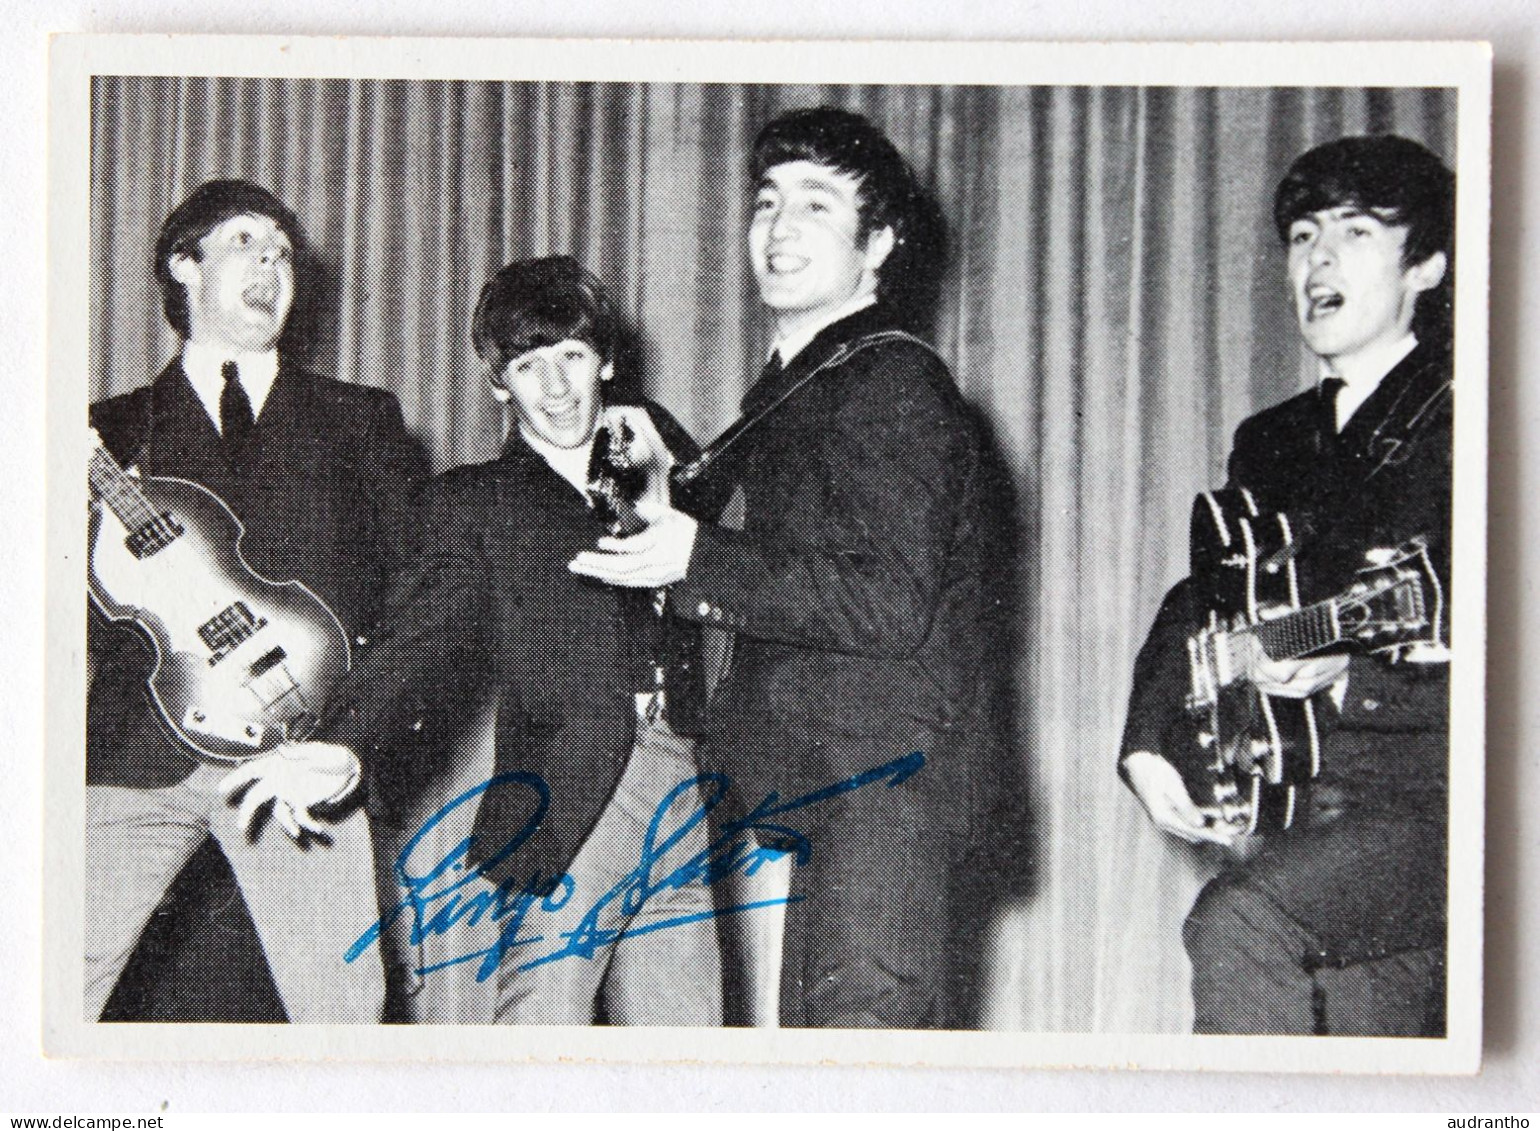 à Choisir 2 Cartes De Collection Image 1964 The Beatles John Lennon Ringo Starr Paul Mccartney - Objets Dérivés